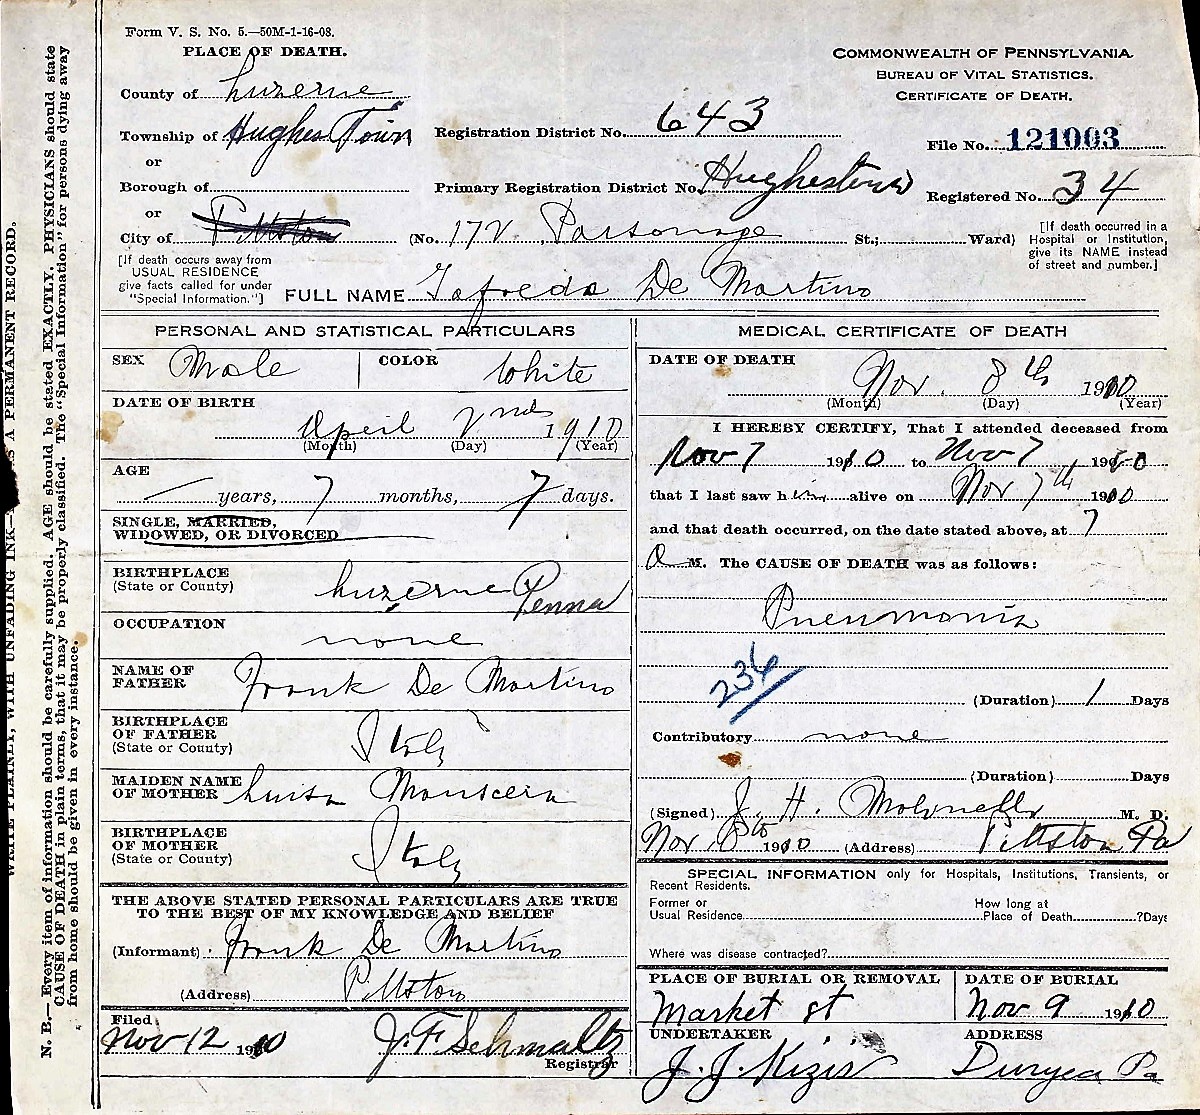 Alfredo DeMartino Death Certificate